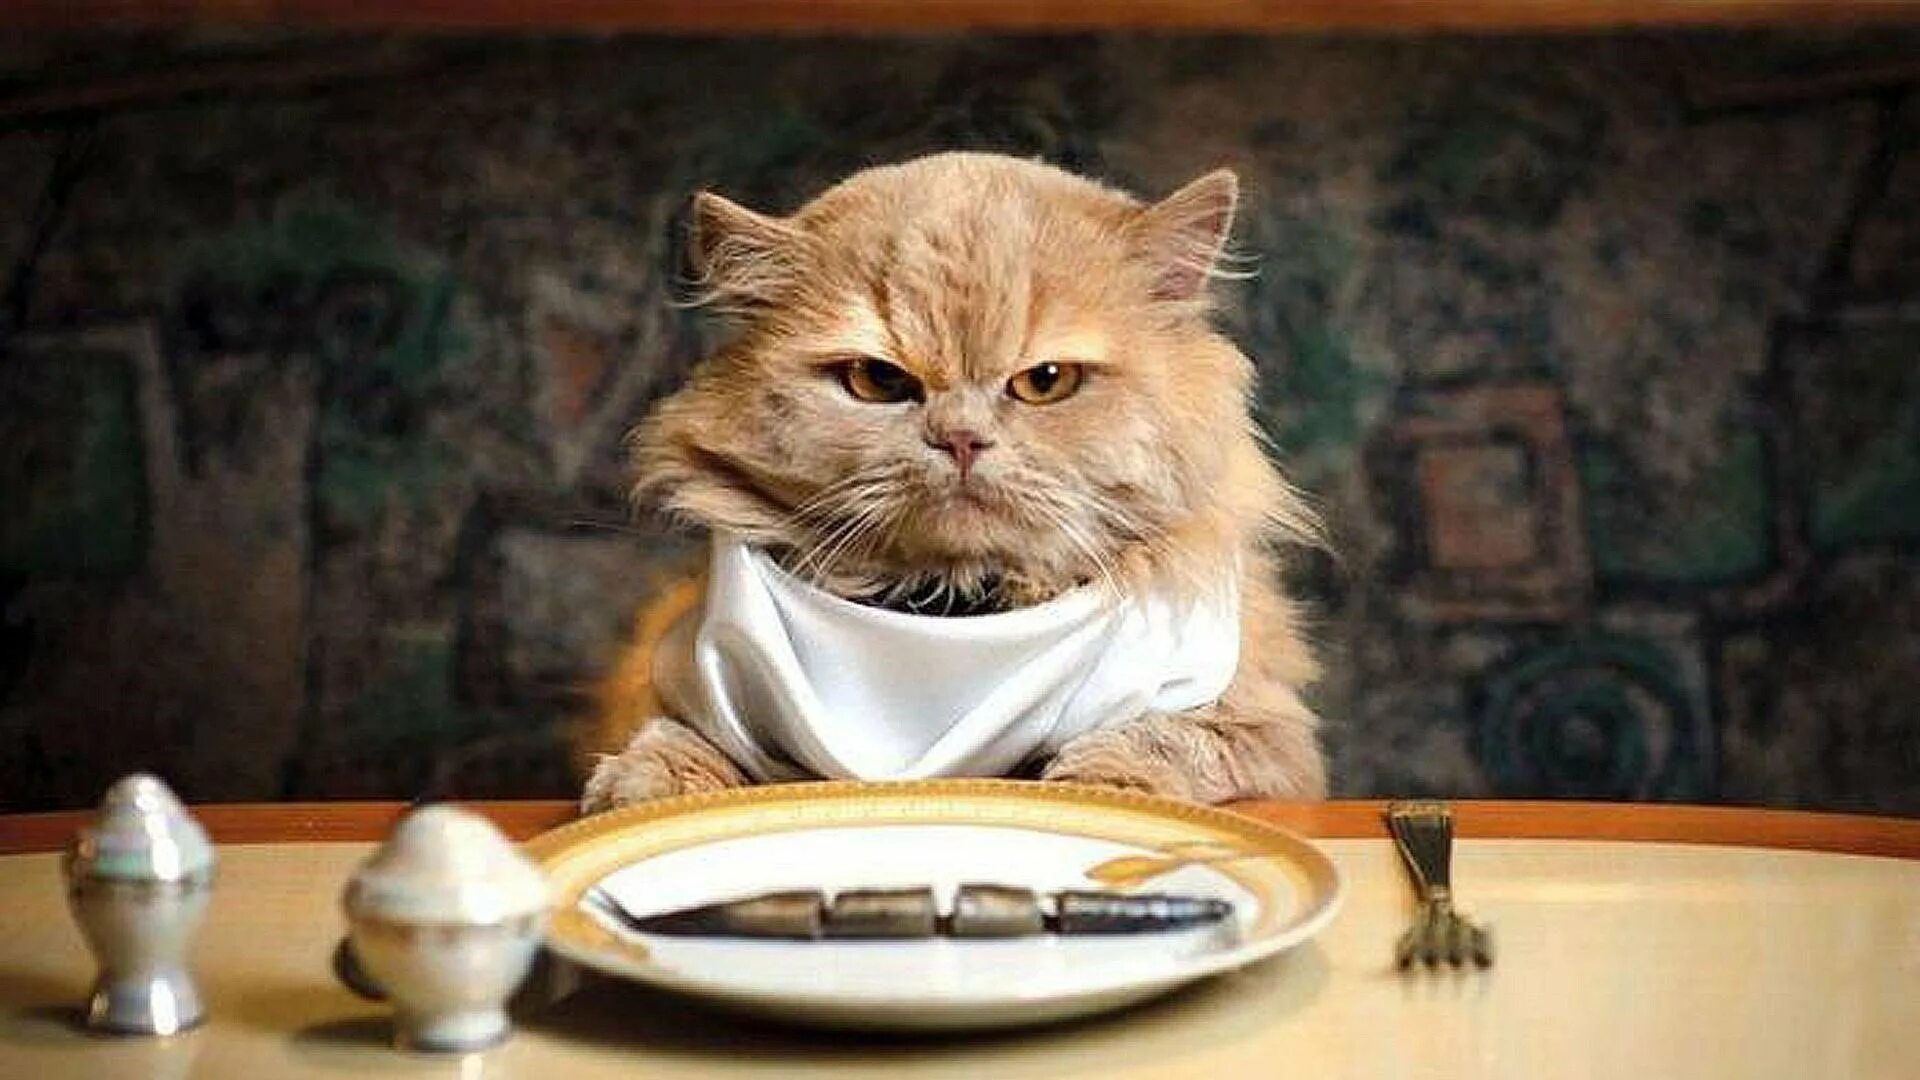 Тихо голодный. Голодный кот. Кот в тарелке. Кот за столом. Кот кушает.